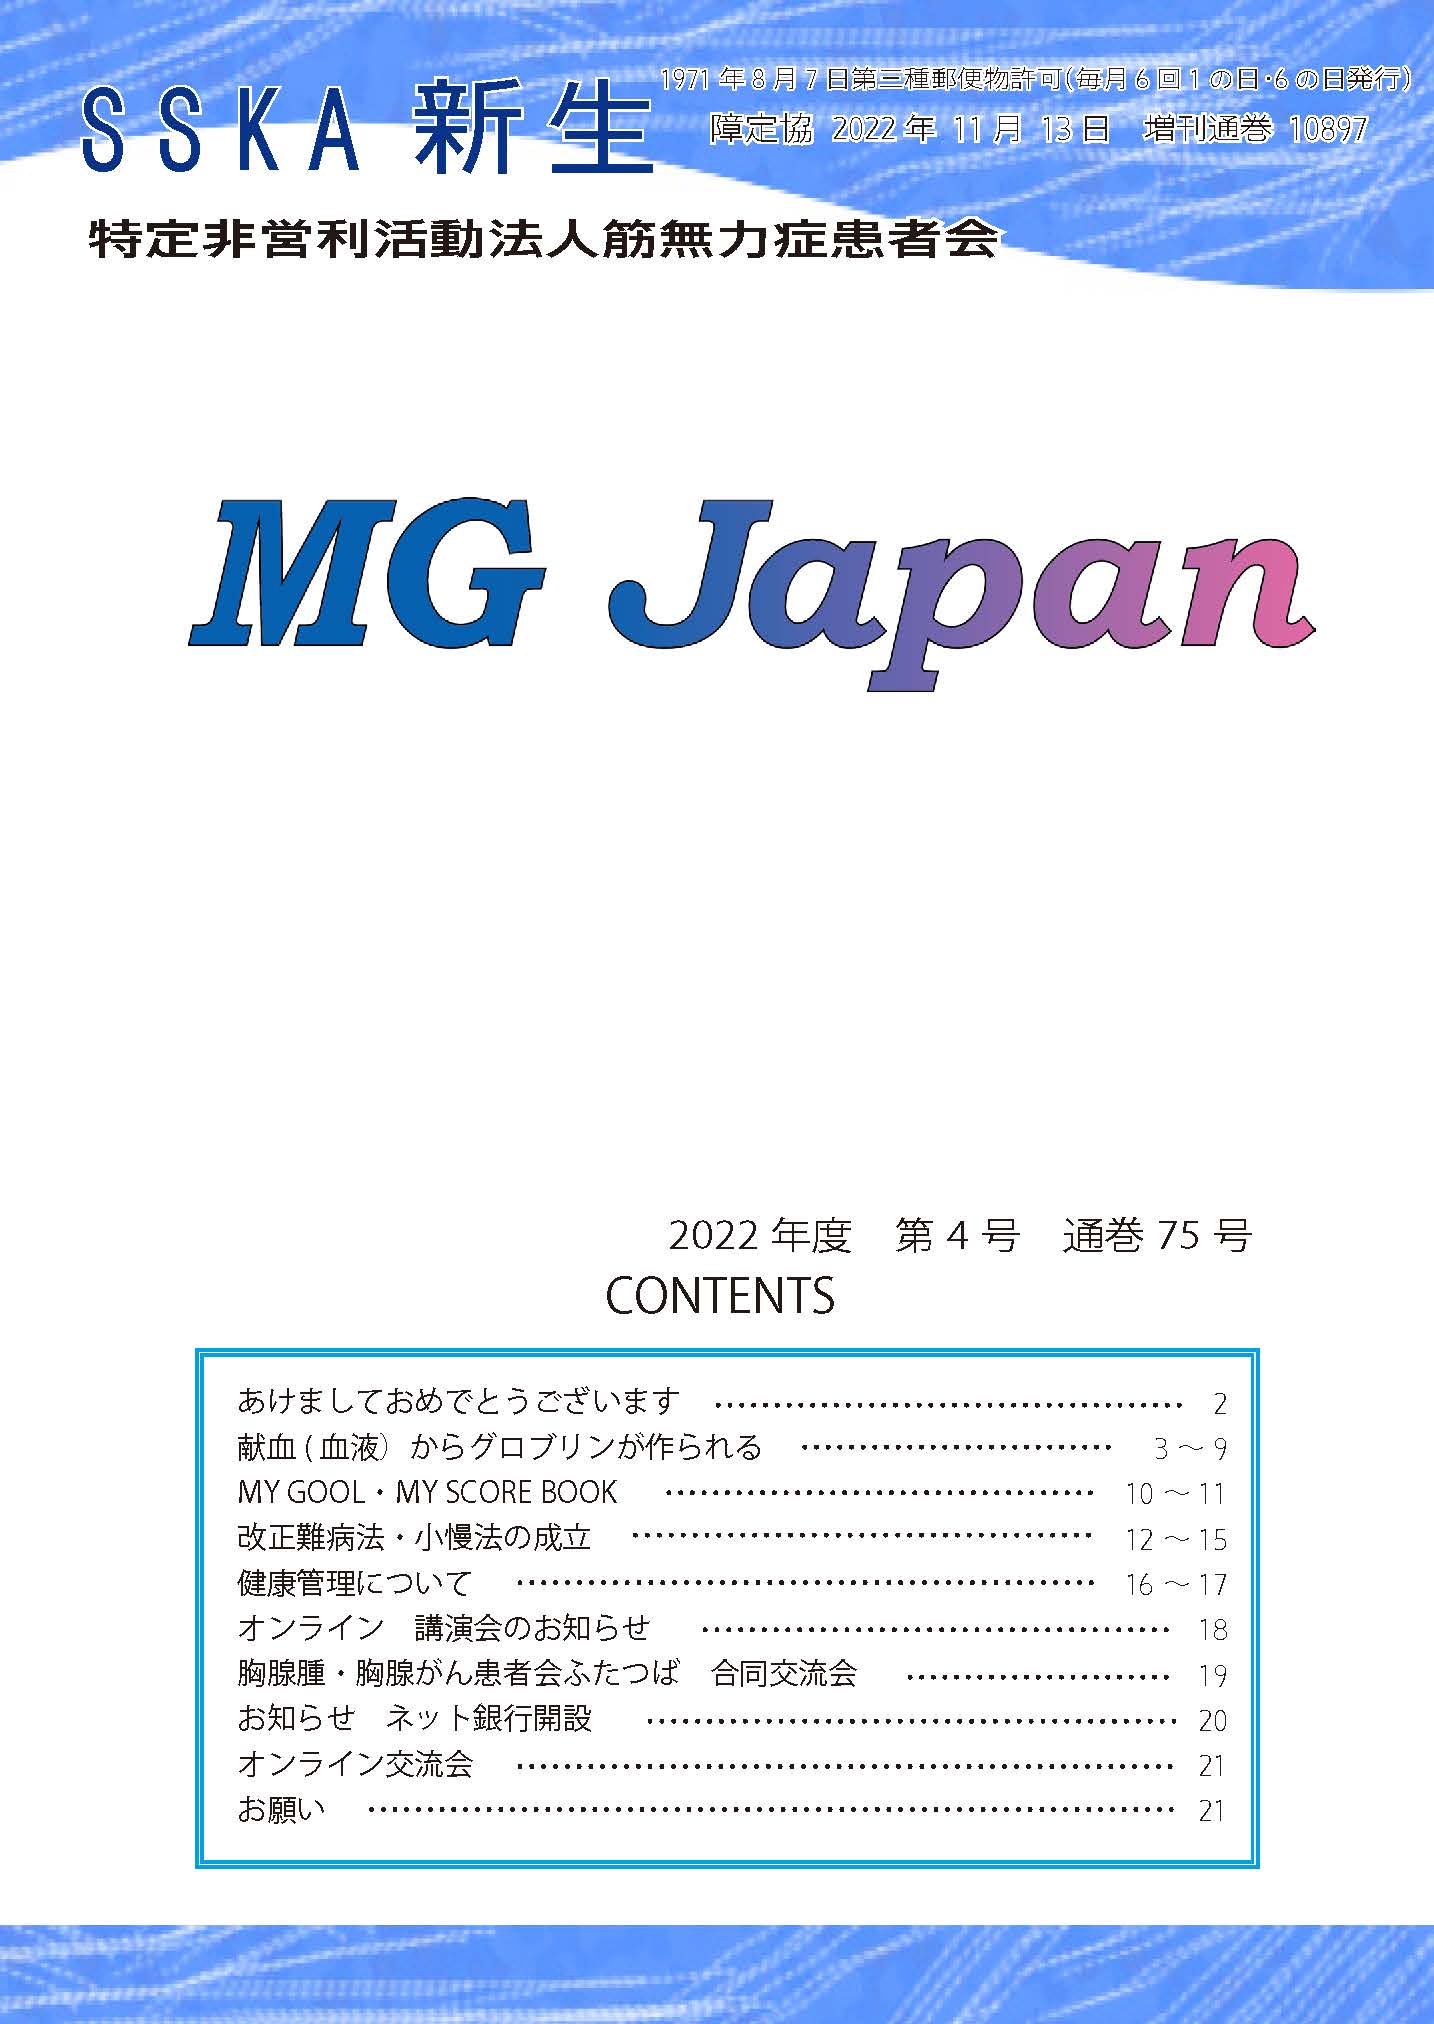 会報「MG Japan75号」